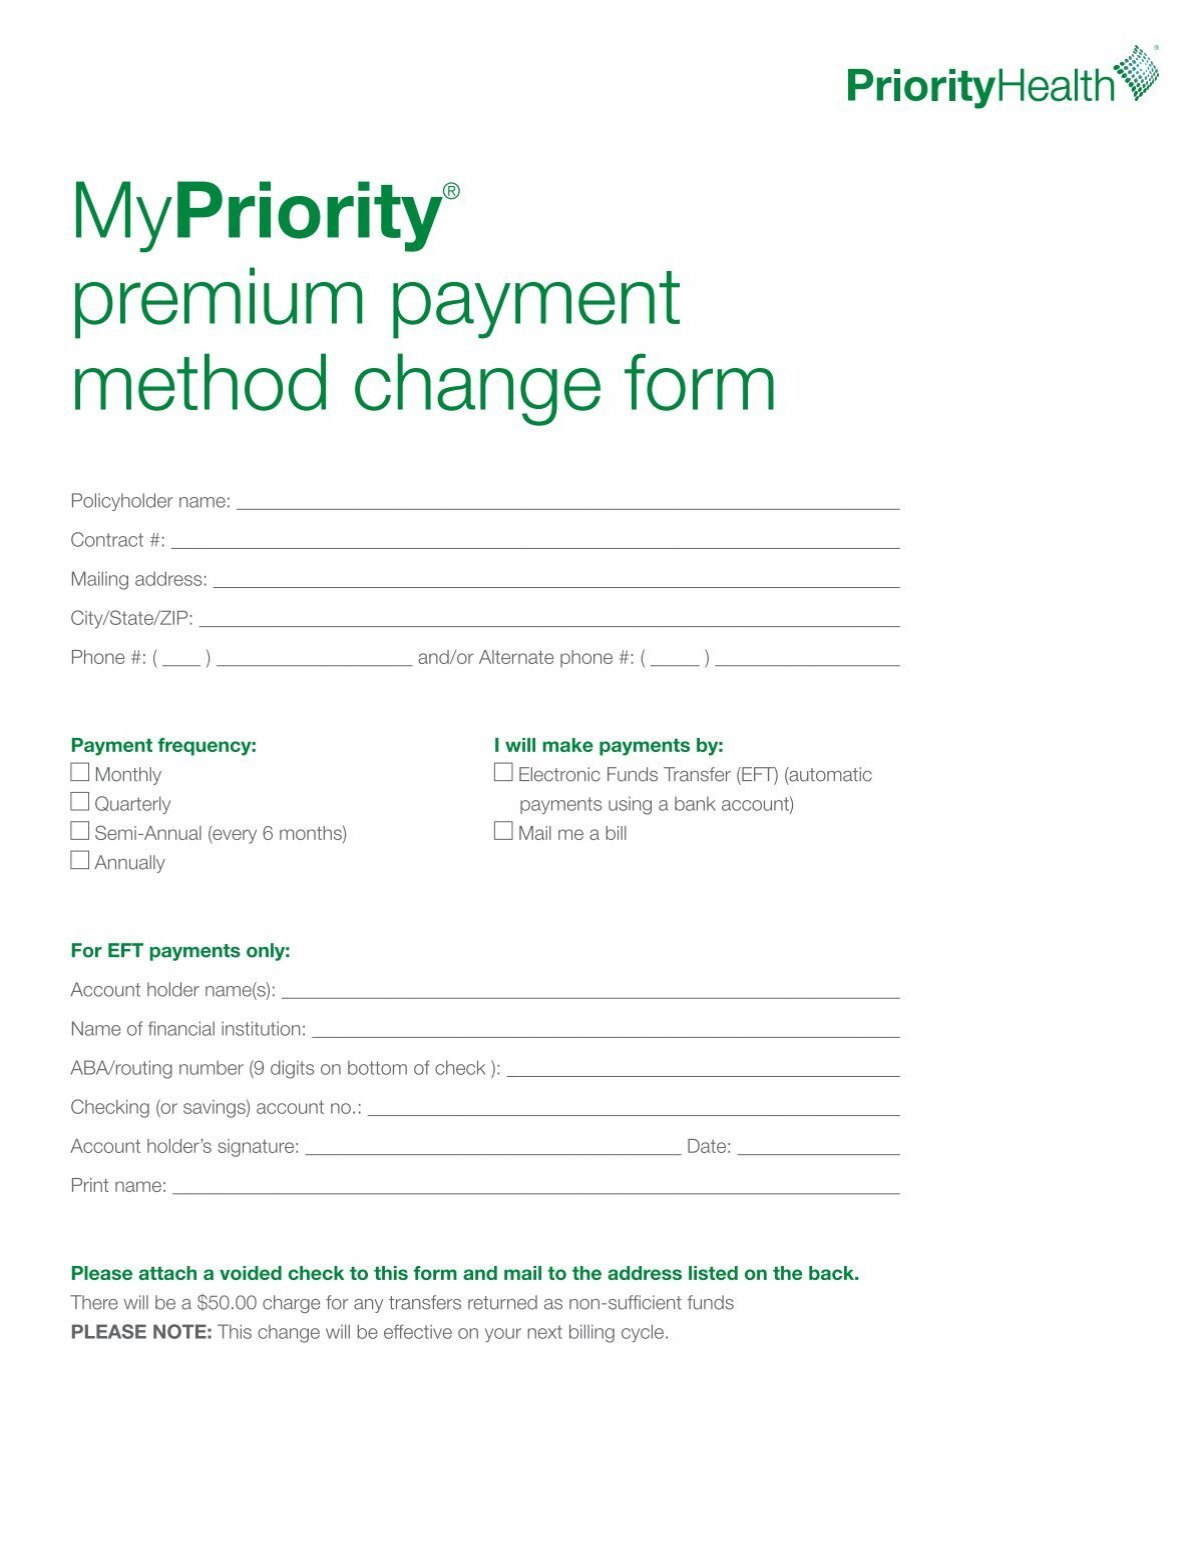 MyPrioritySM premium payment method change form - Priority ...